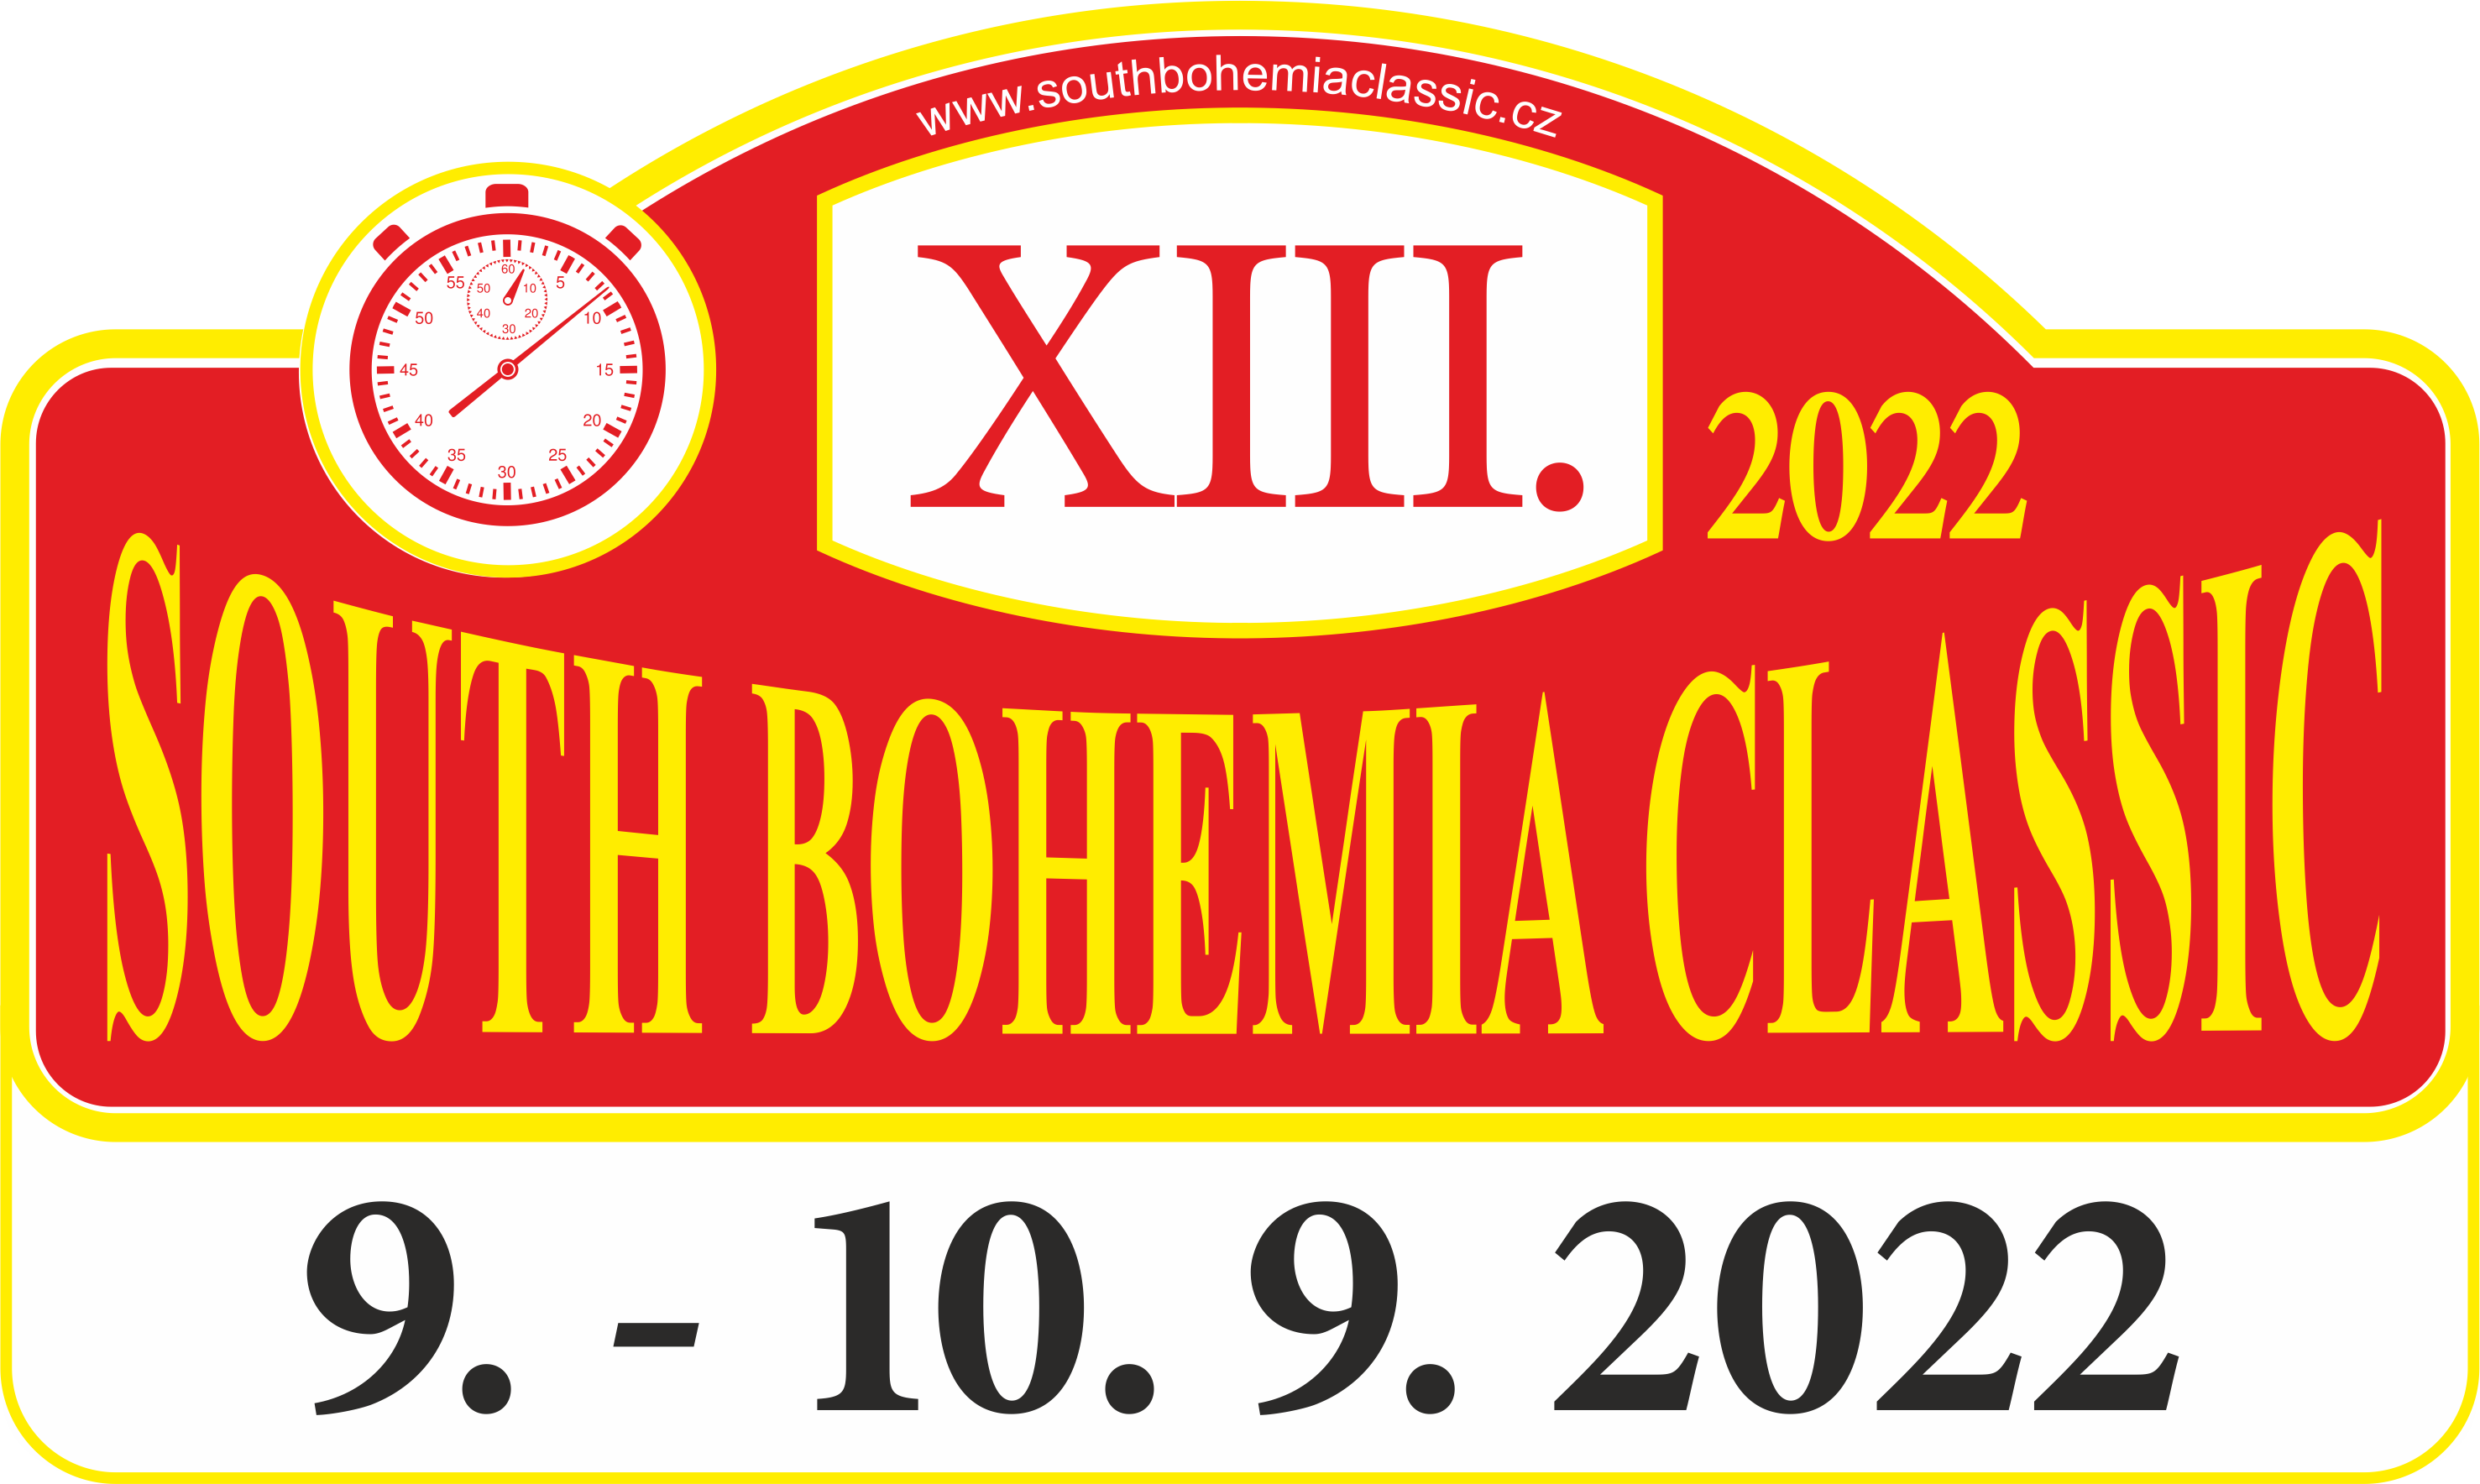 South Bohemia Classic 2022